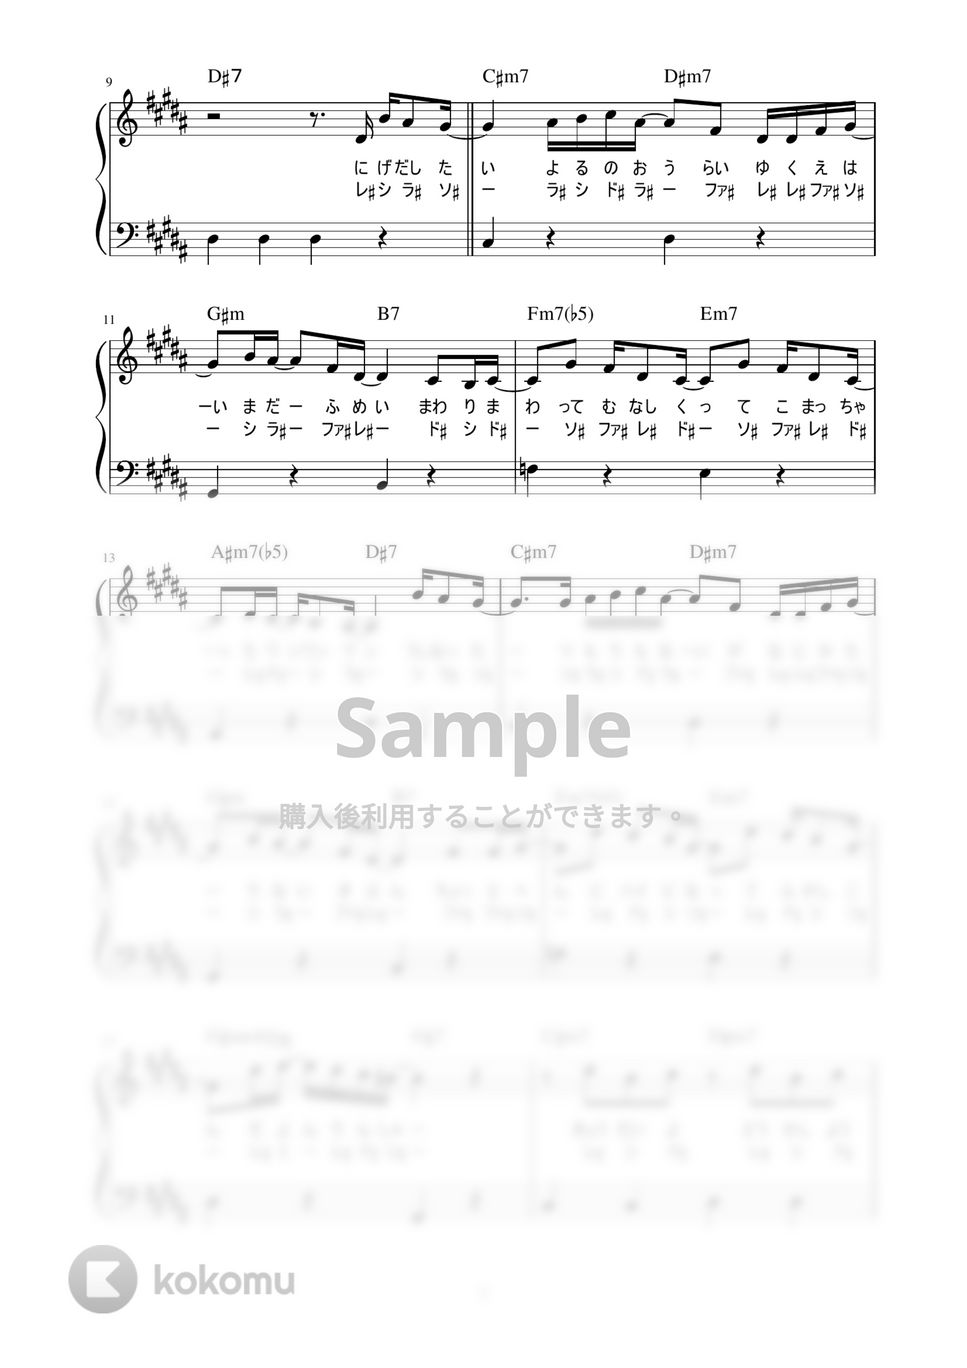 米津 玄師 - 感電 (かんたん / 歌詞付き / ドレミ付き / 初心者) by piano.tokyo